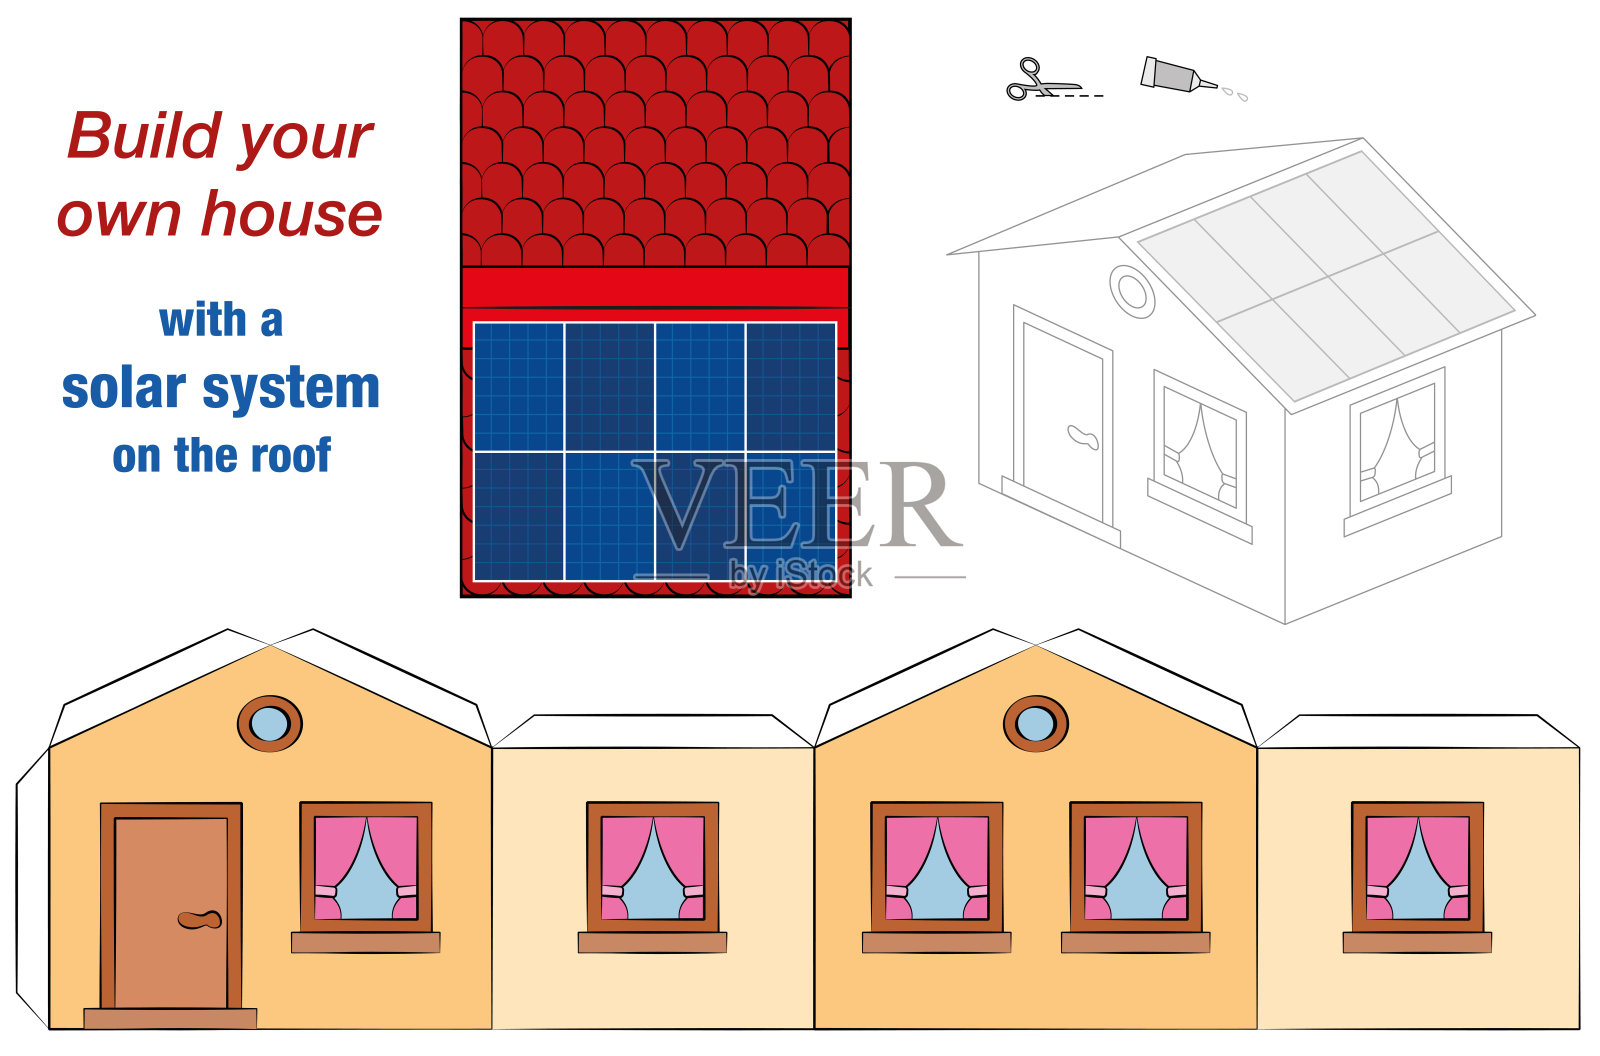 屋顶上有太阳能电池板集热器的房屋模板——光伏技术小屋模型——剪出、折叠和胶剪出的宣传片，以促进生态教育。插画图片素材